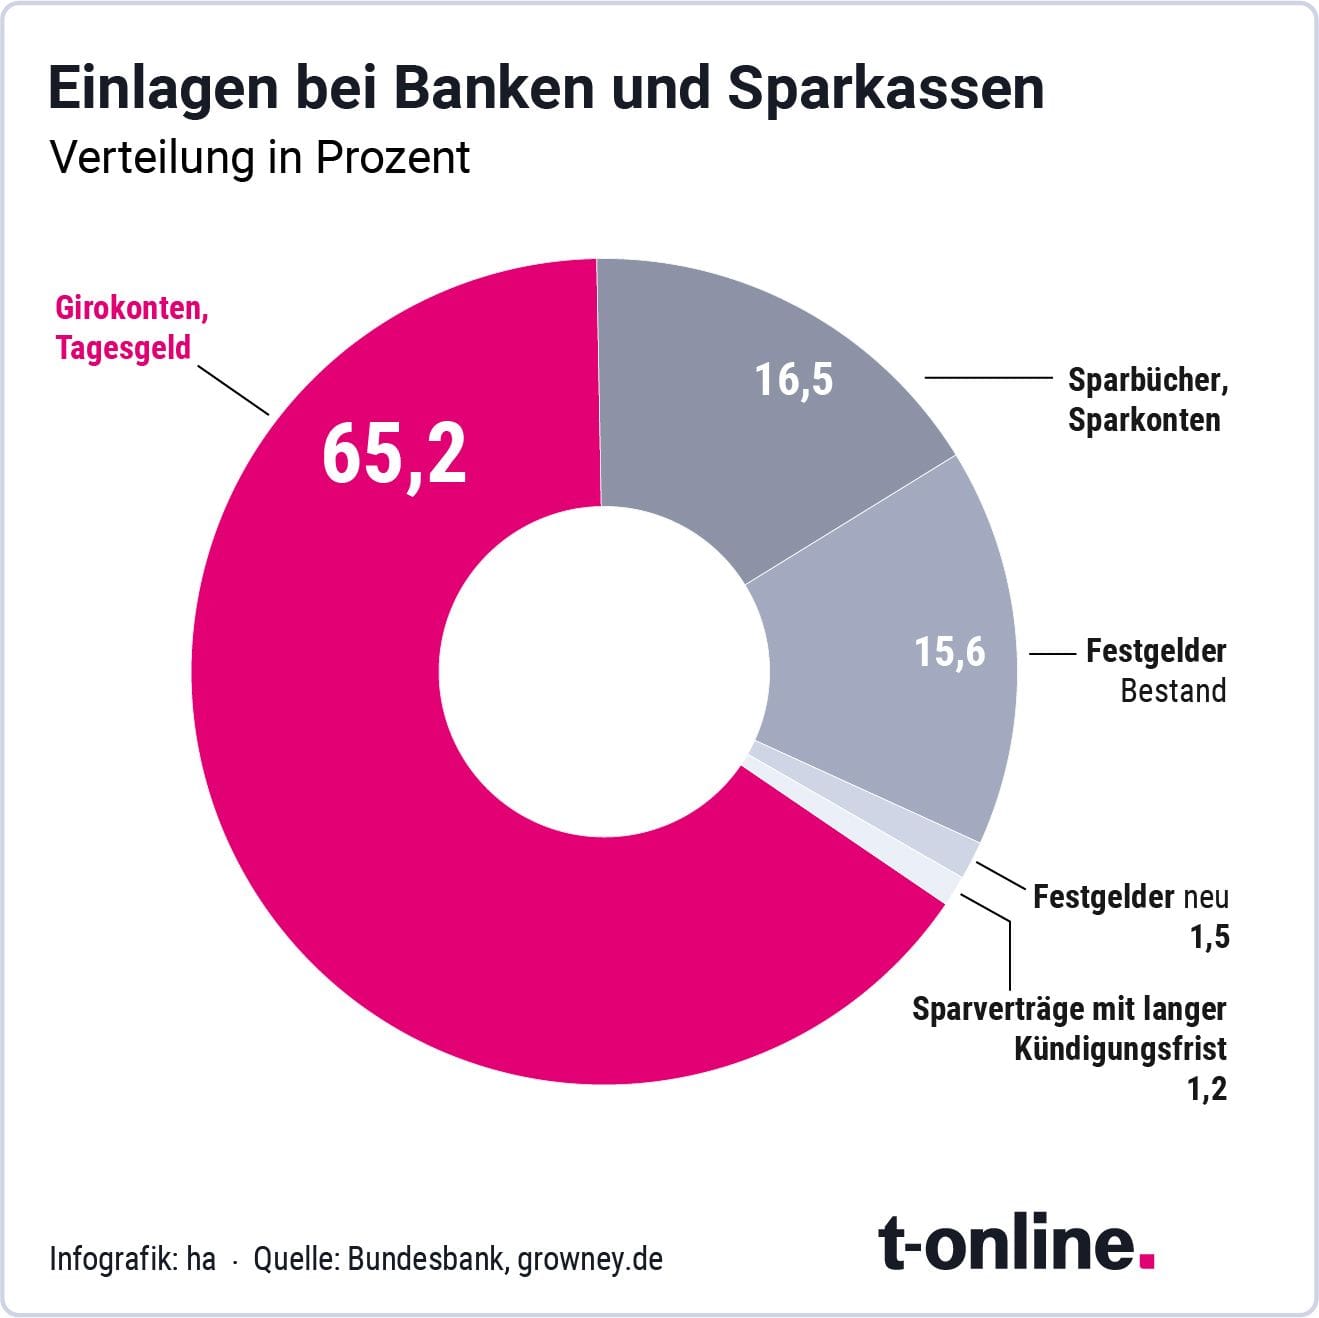 65,2 Prozent des Geldes der Deutschen liegt auf Giro- und Tagesgeldkonten